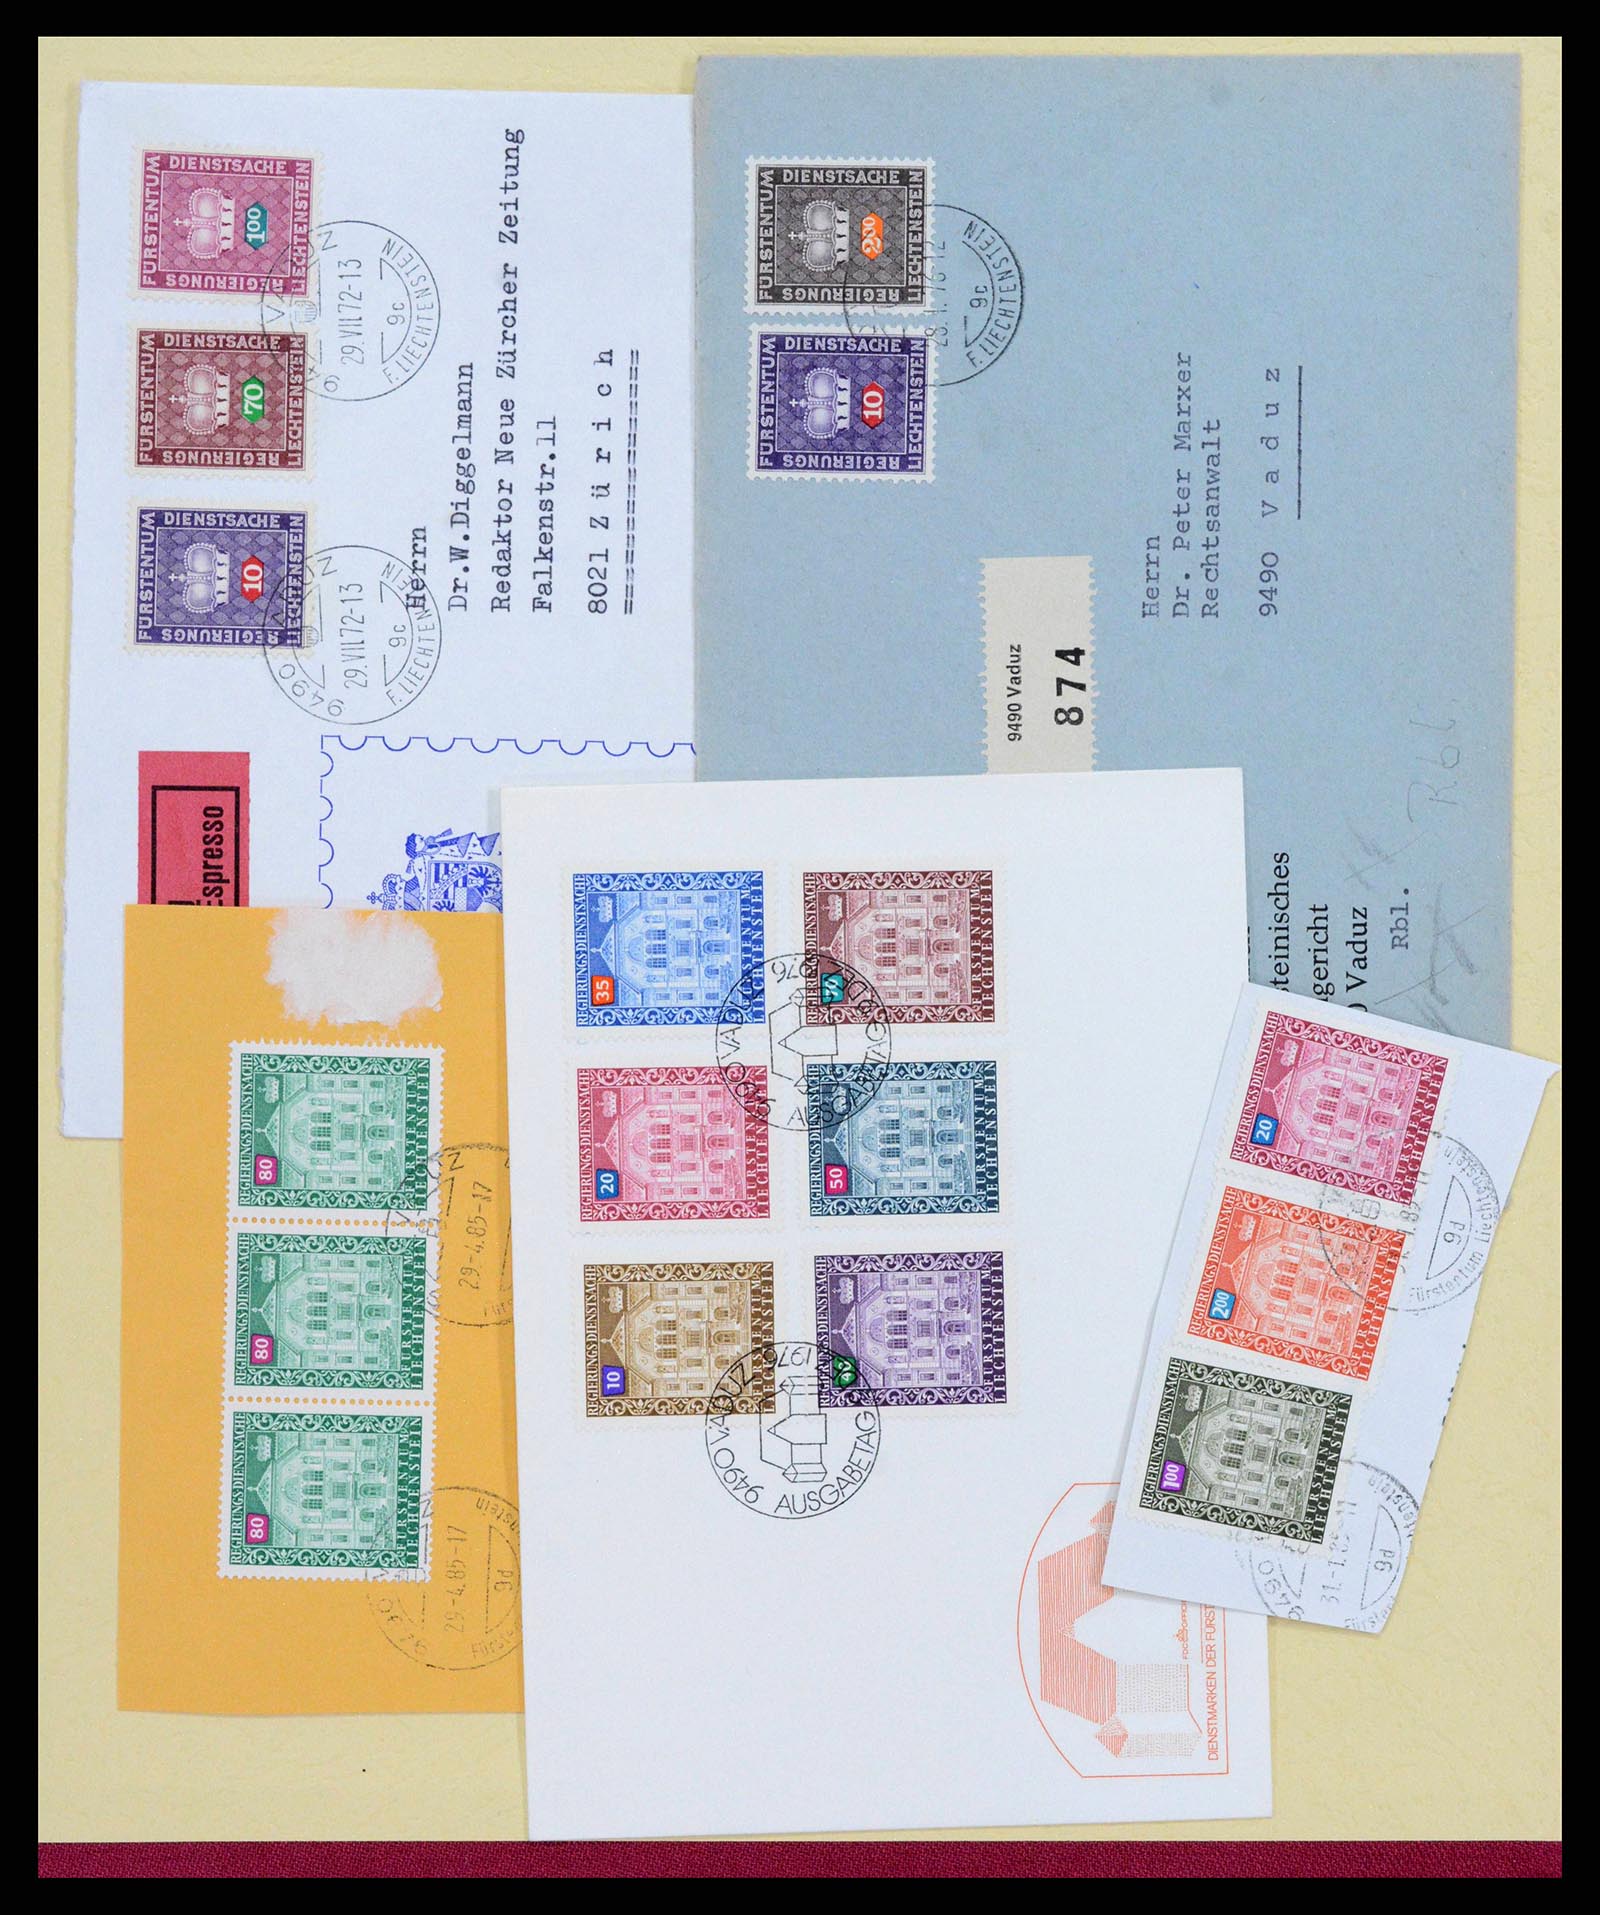 38204 0056 - Stamp collection 38204 Liechtenstein service covers 1932-1989.